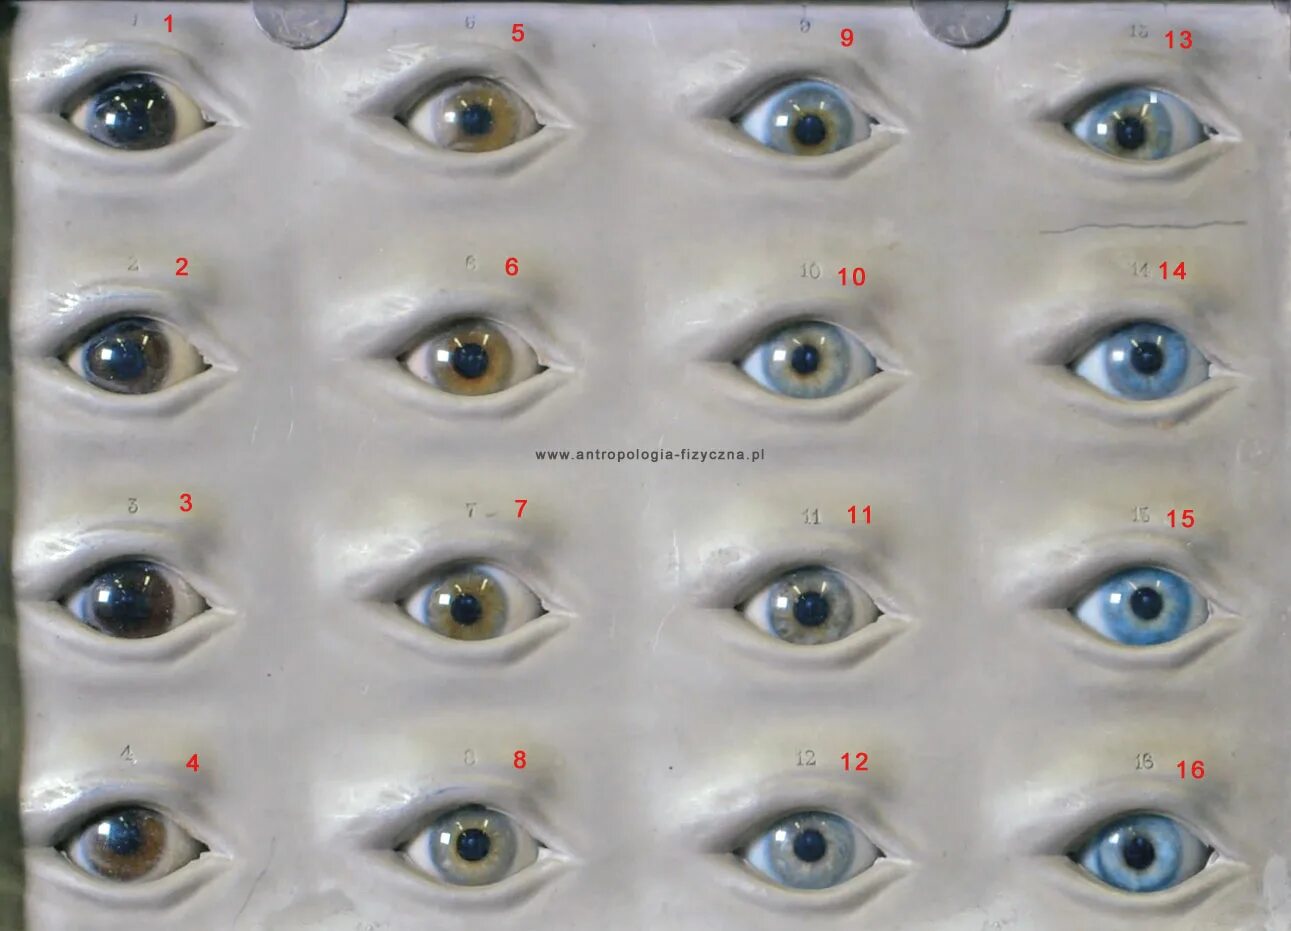 Как узнать какие глаза